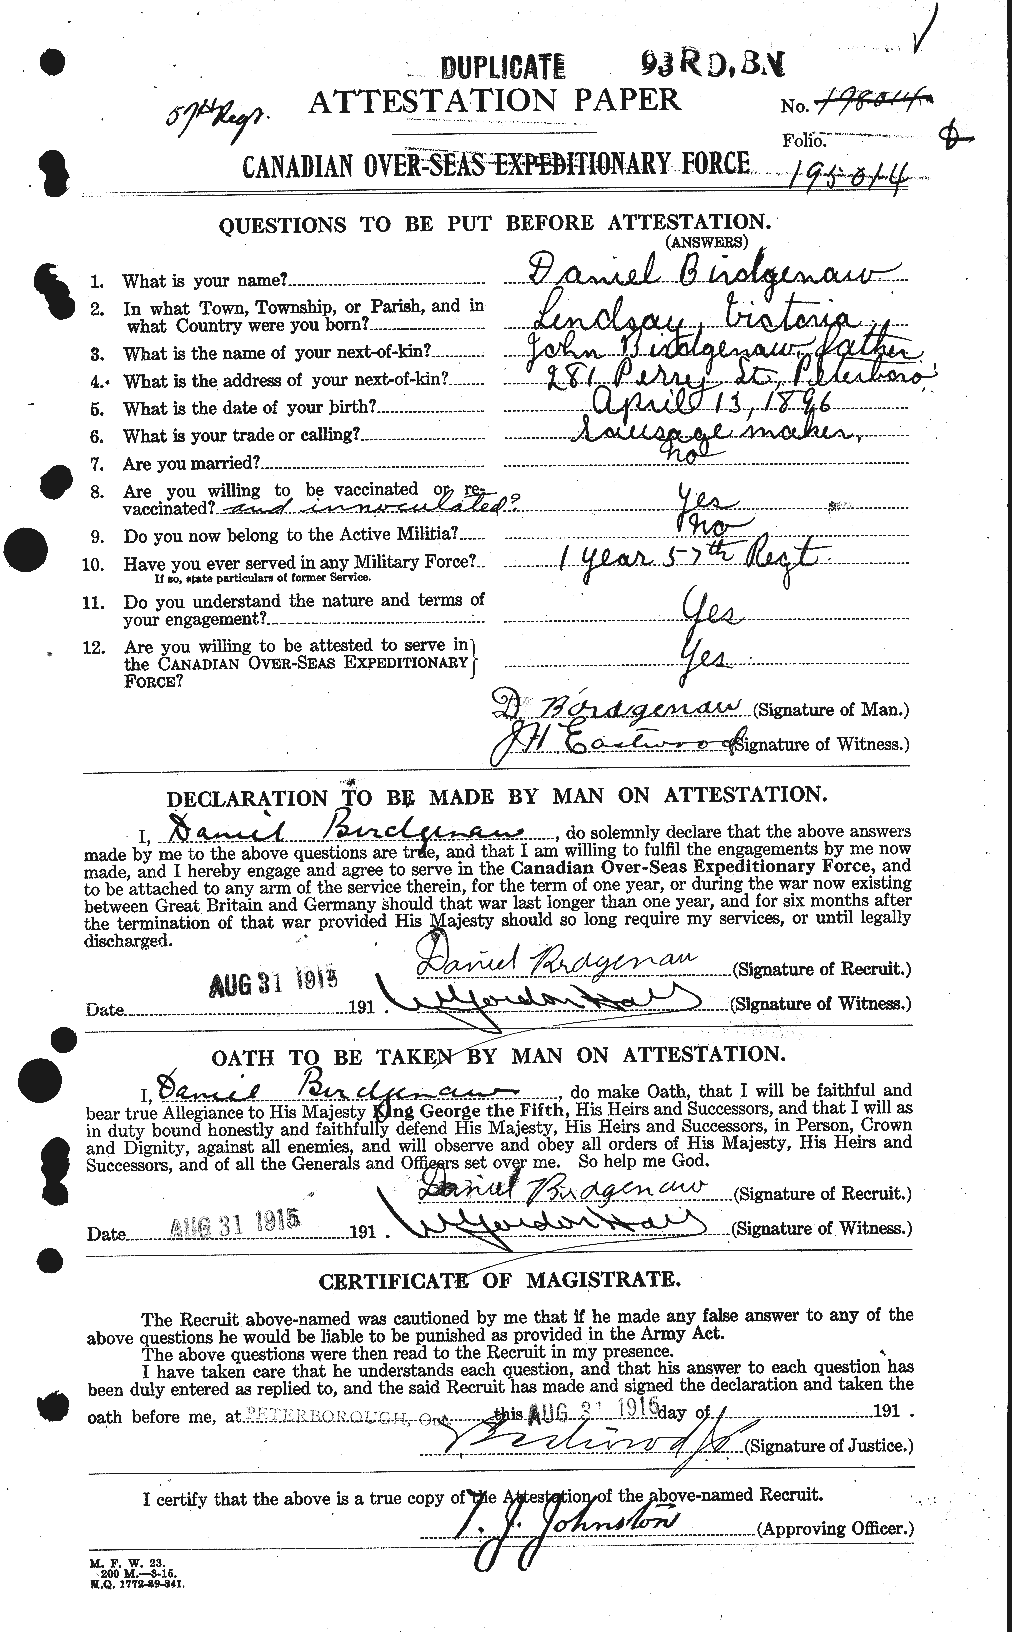 Dossiers du Personnel de la Première Guerre mondiale - CEC 243814a